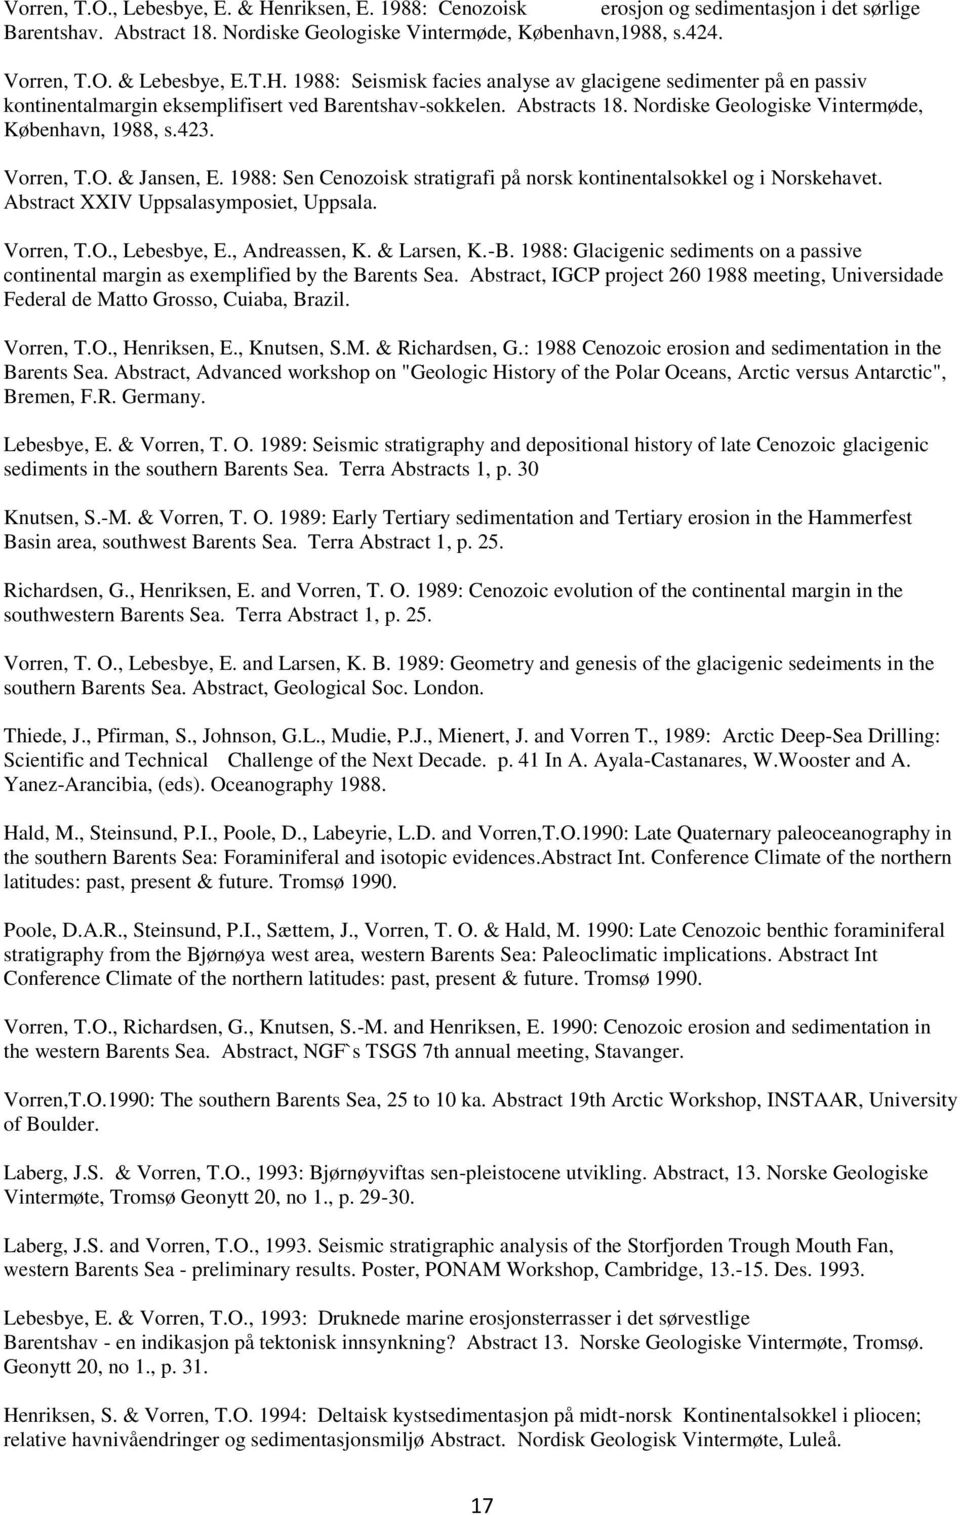 Vorren, T.O. & Jansen, E. 1988: Sen Cenozoisk stratigrafi på norsk kontinentalsokkel og i Norskehavet. Abstract XXIV Uppsalasymposiet, Uppsala. Vorren, T.O., Lebesbye, E., Andreassen, K. & Larsen, K.